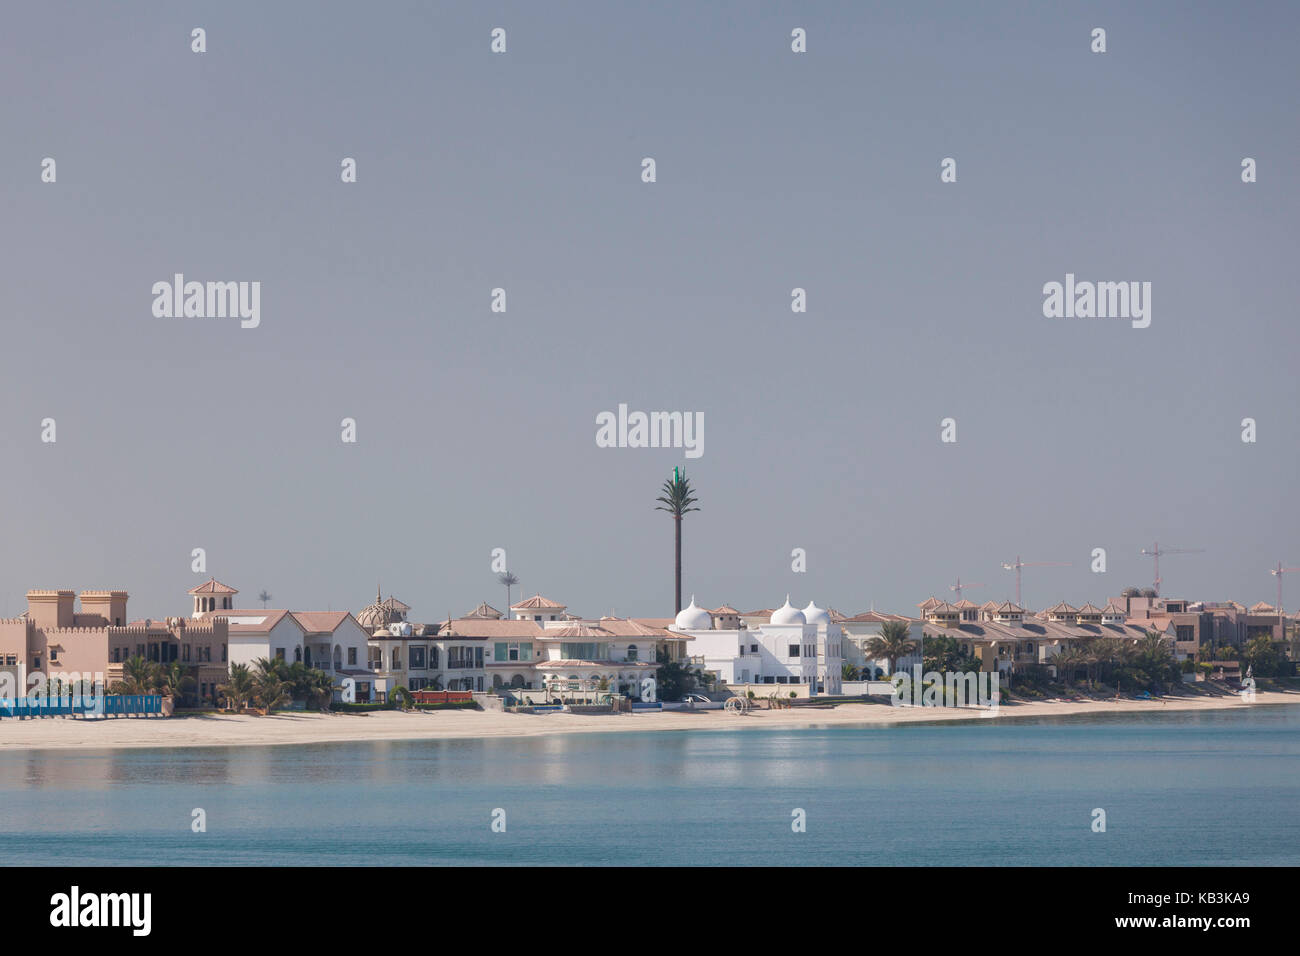 Uae, Dubai, Palm Jumeirah, beachfront Häuser, Palm Area von künstlichen Inseln in Form einer Palme Stockfoto